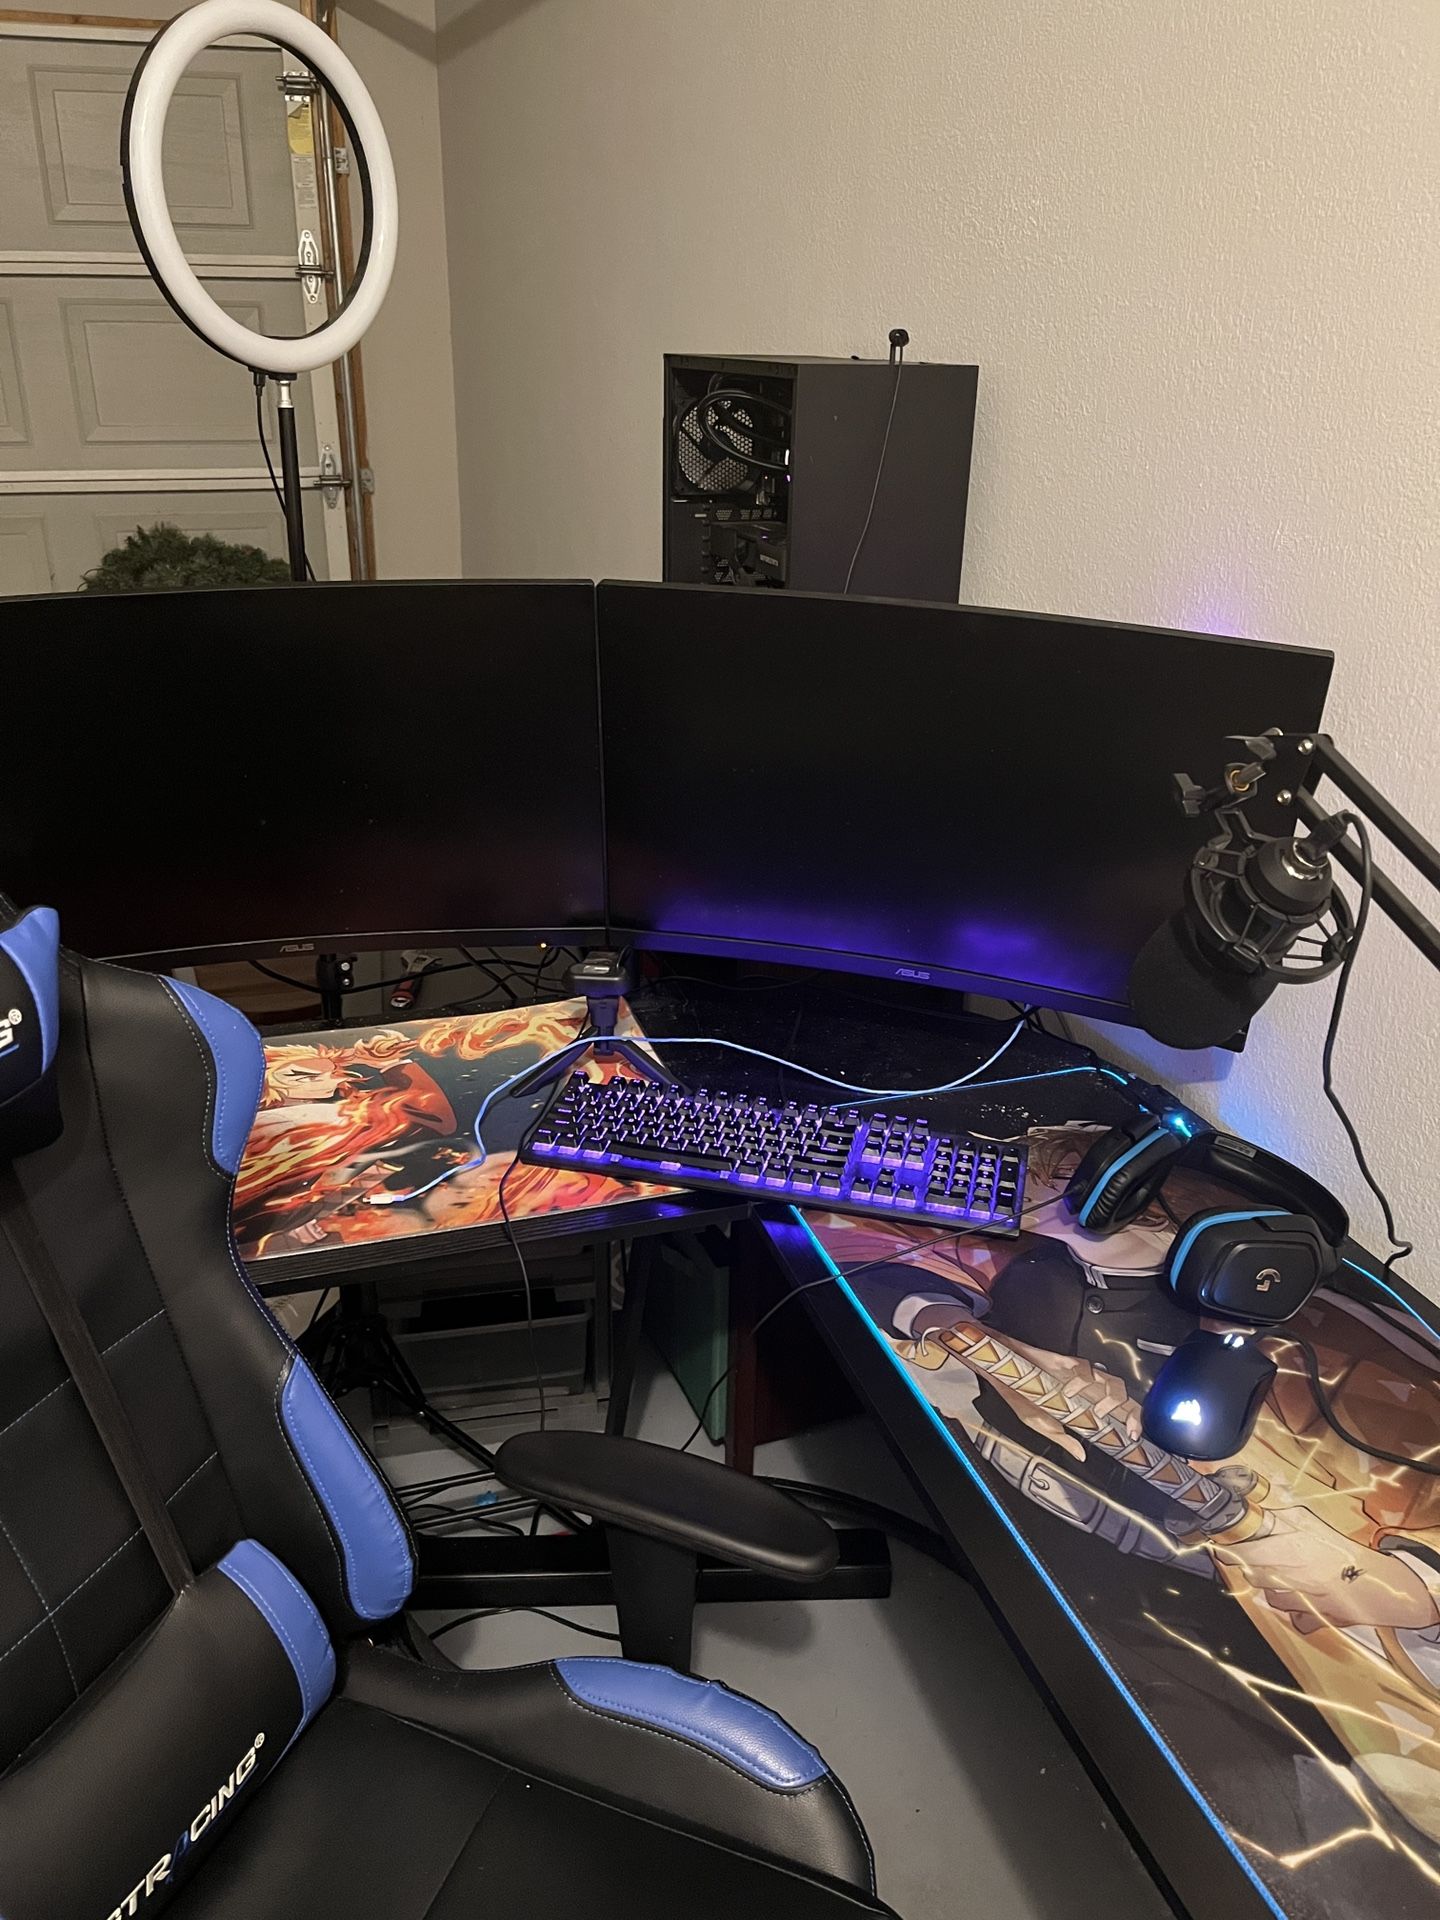 Whole PC SetUp (Chair, Desk, PC, Etc)